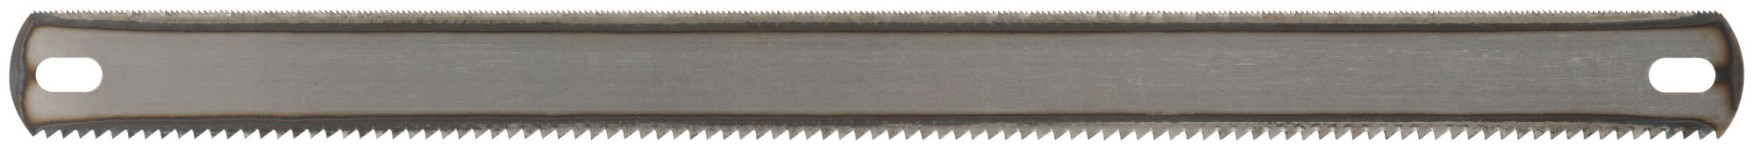 Полотна ножовочные металл/дерево ( 24 TPI / 8 TPI ), каленый зуб, широкие двусторонние, 300х24 мм, 72 шт.